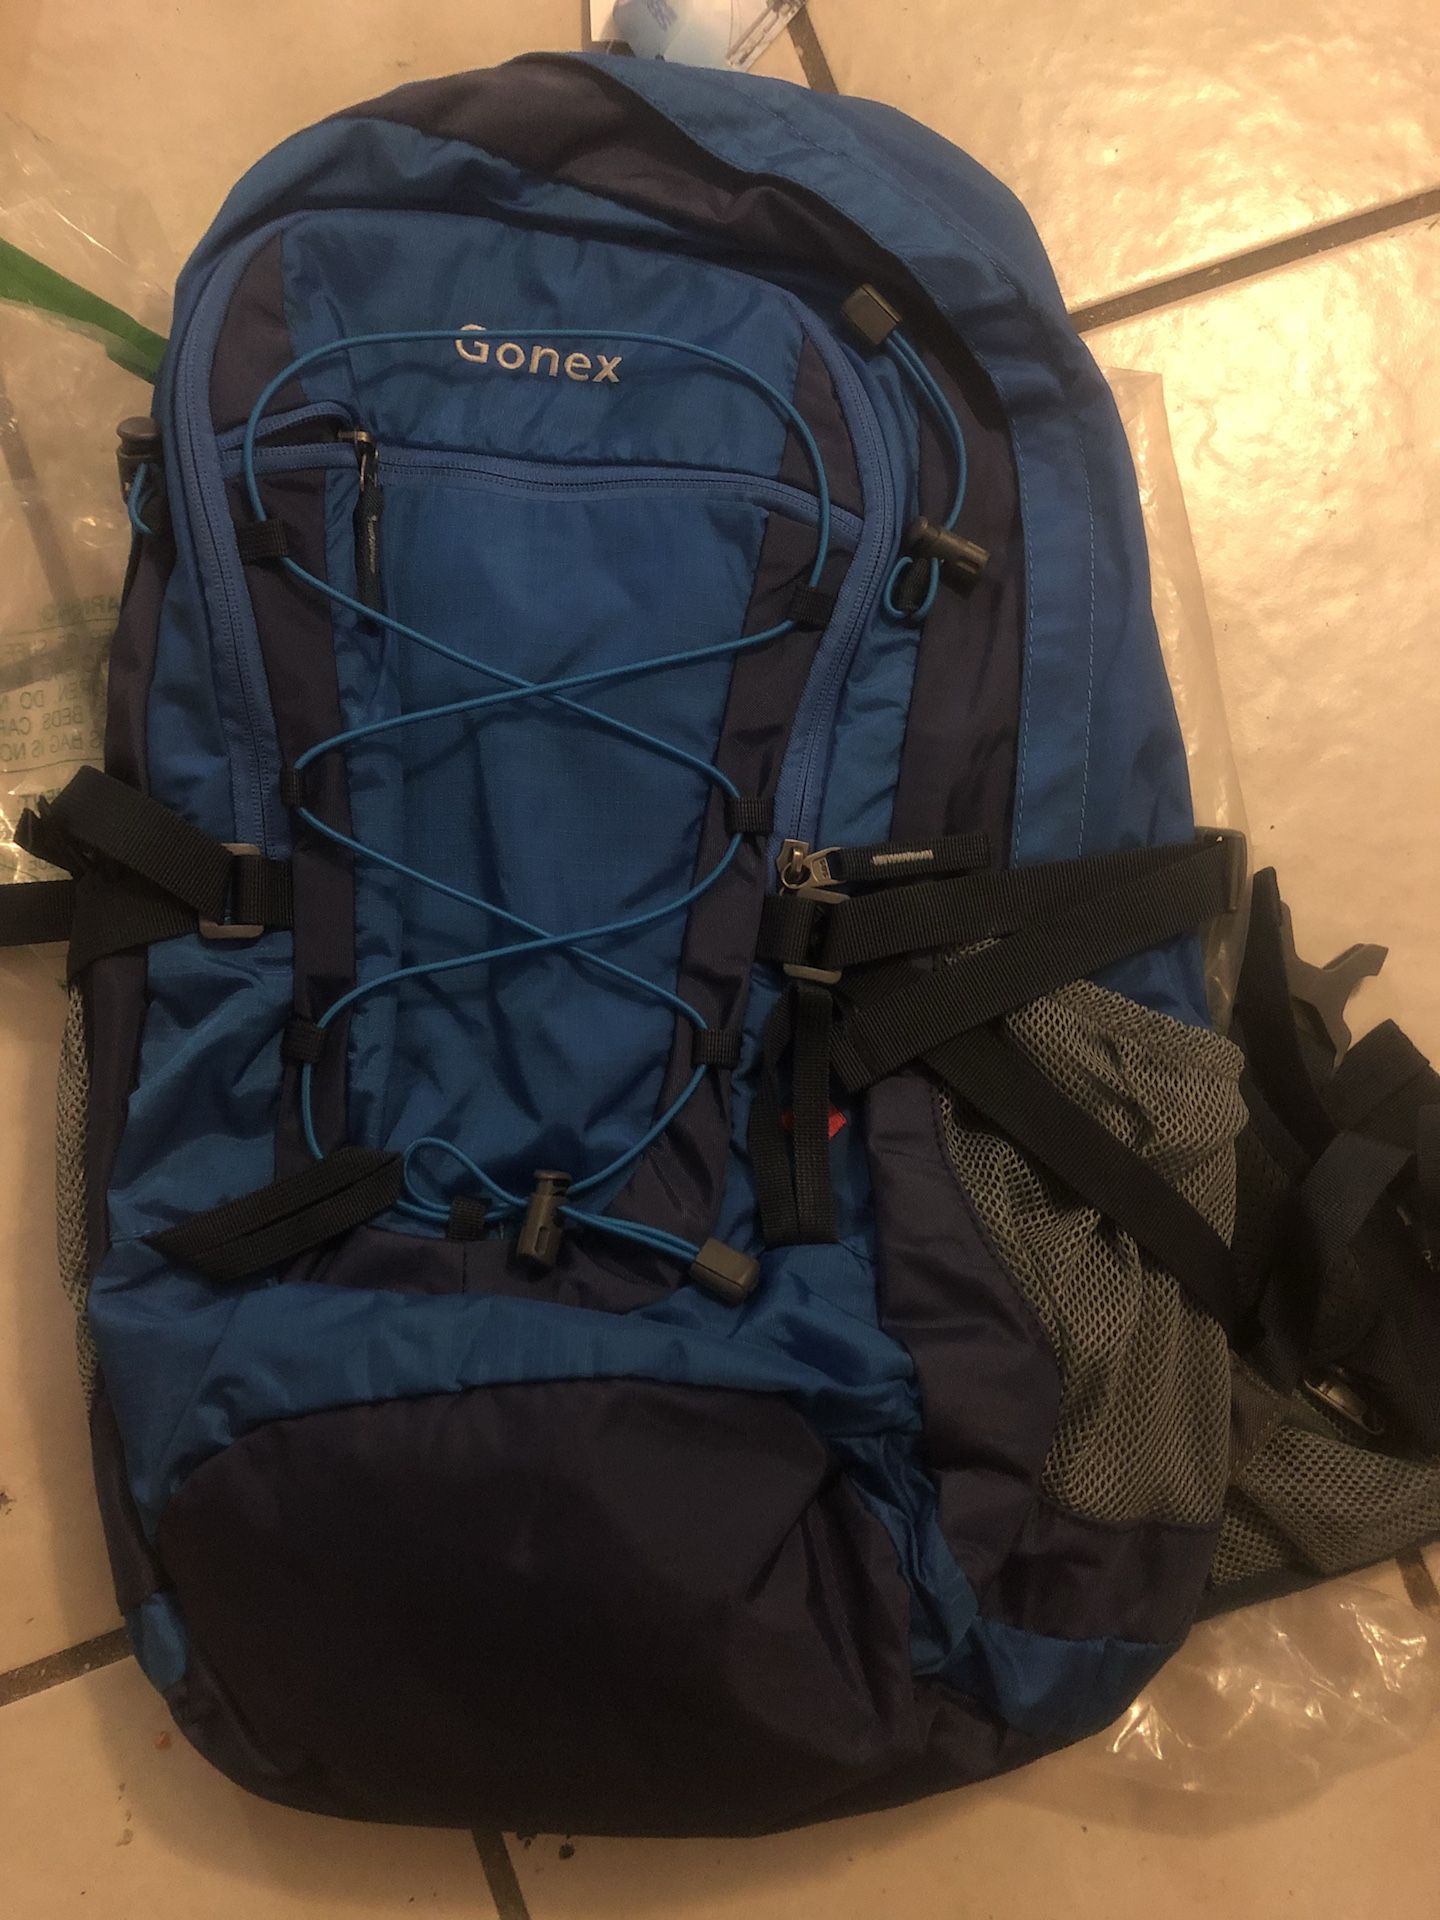 Gonex backpack